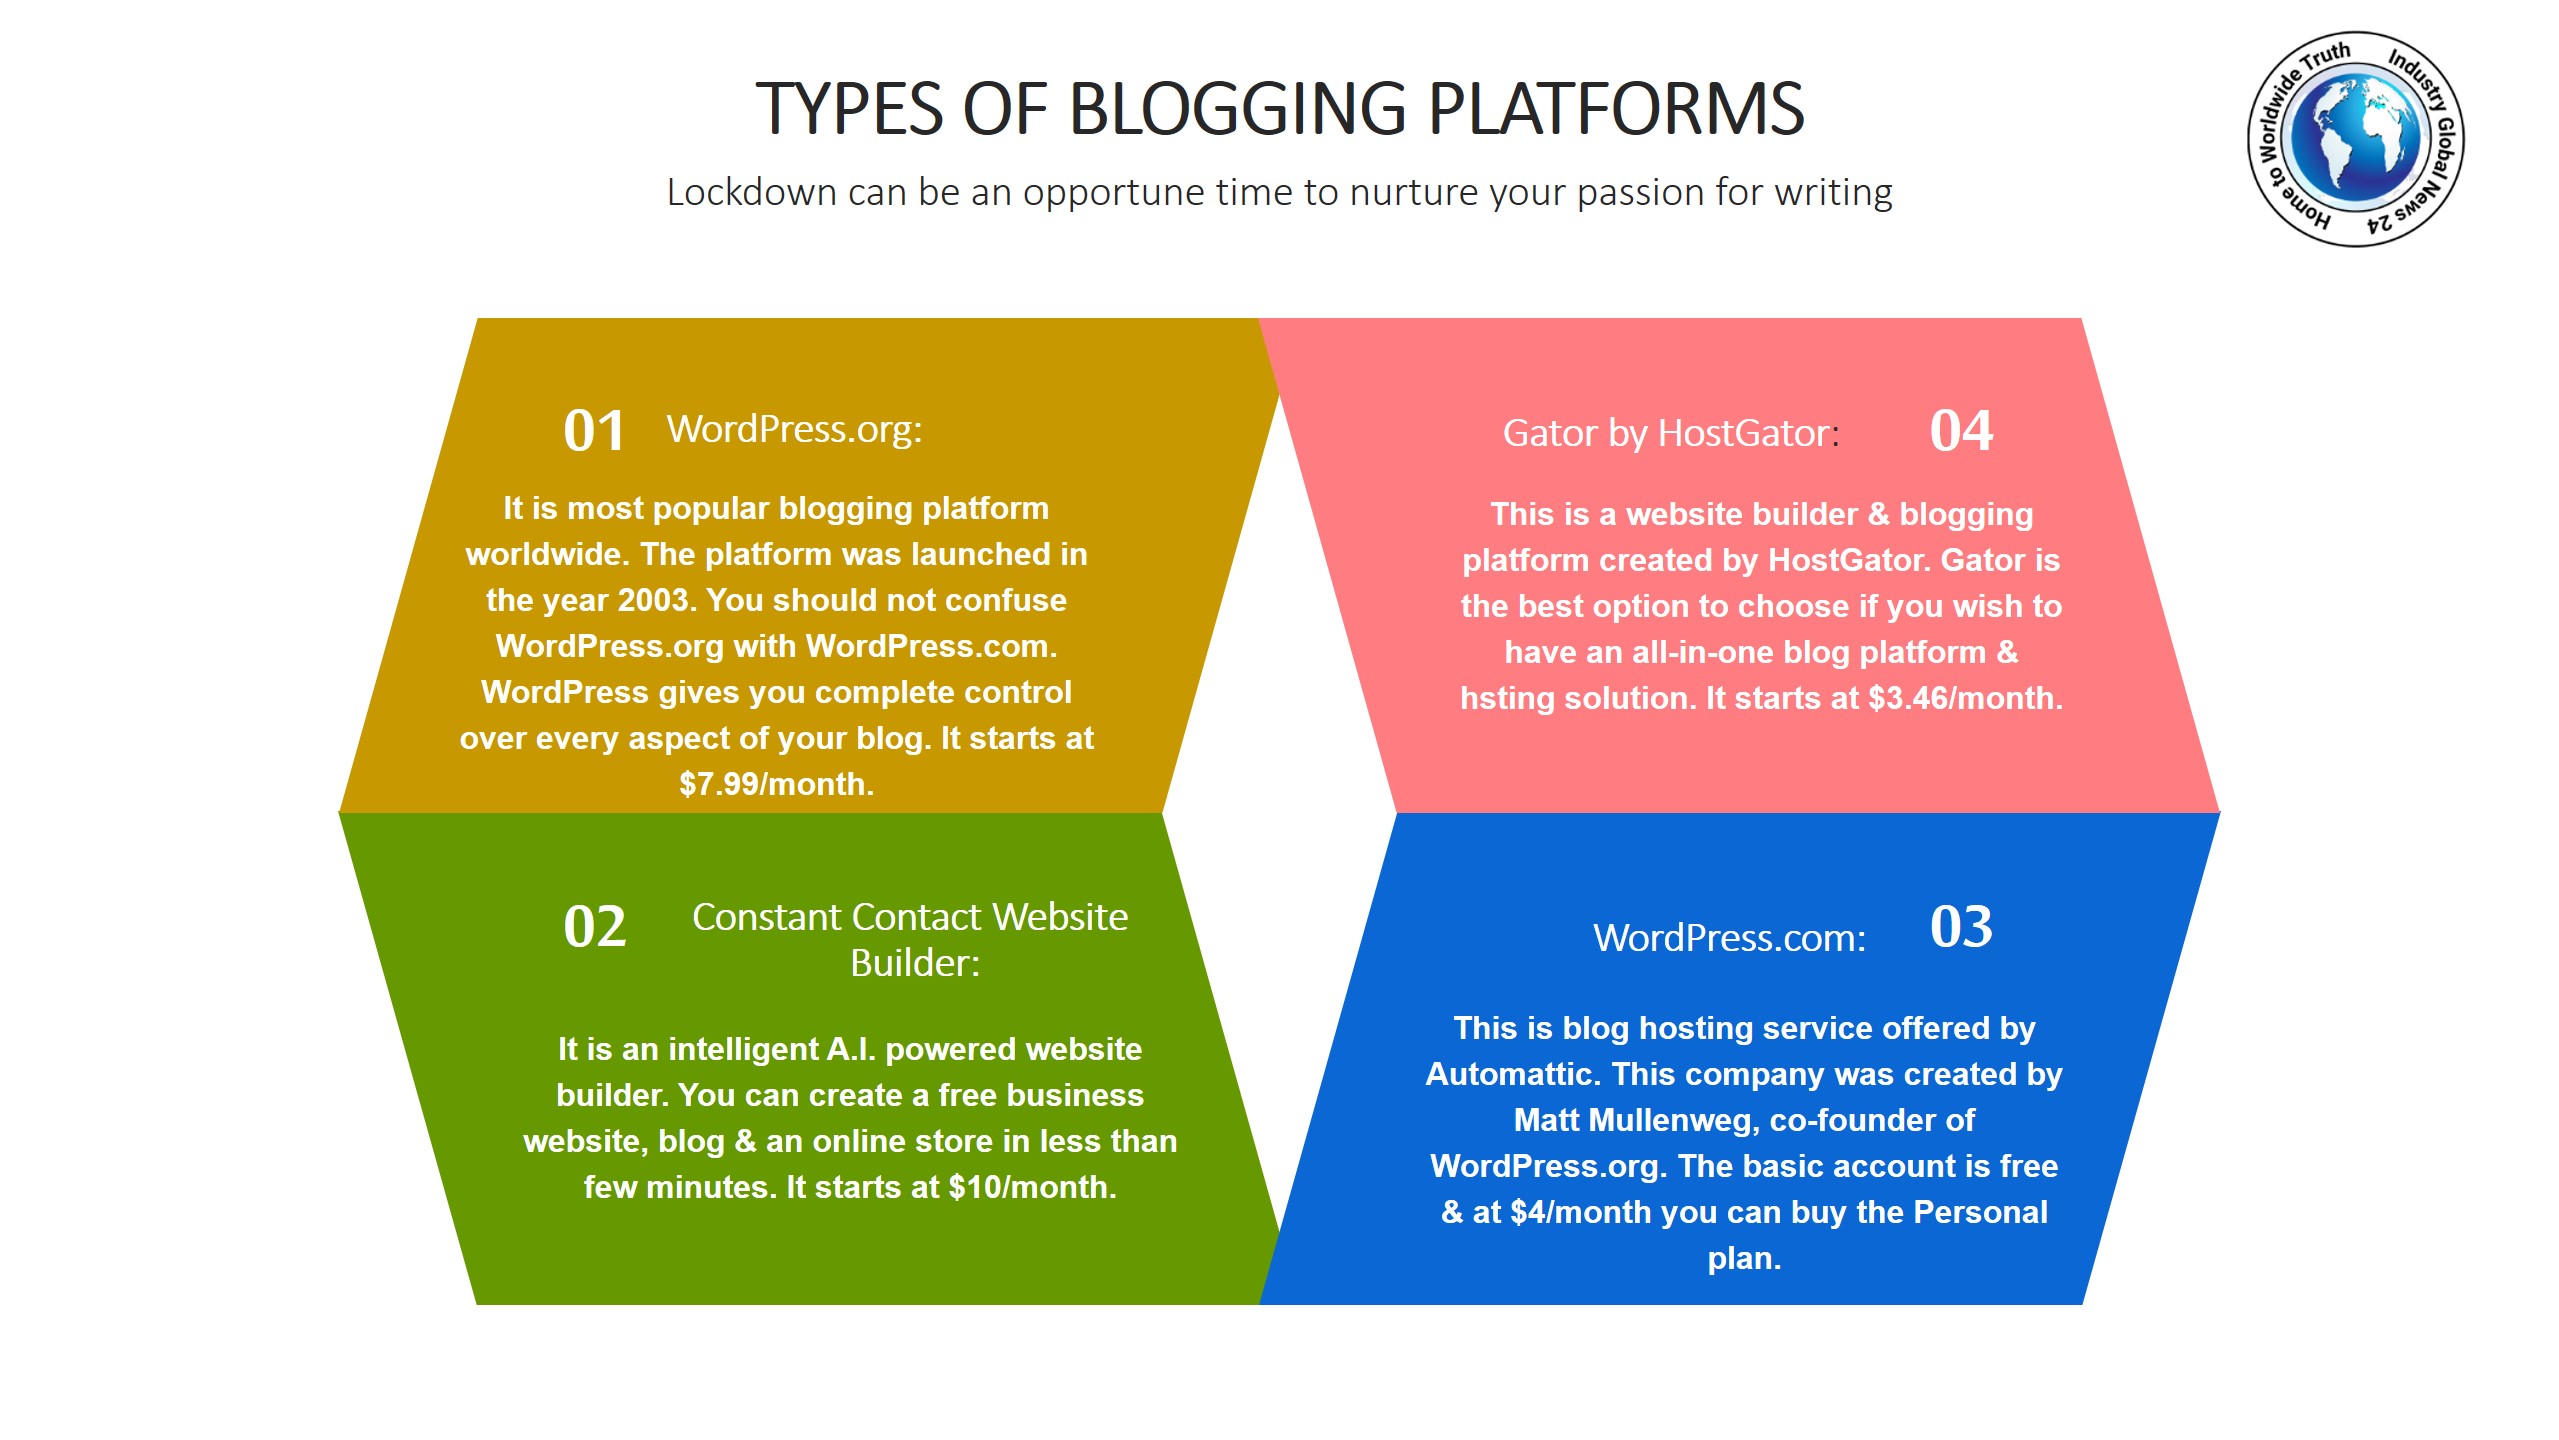 Types of blogging platforms